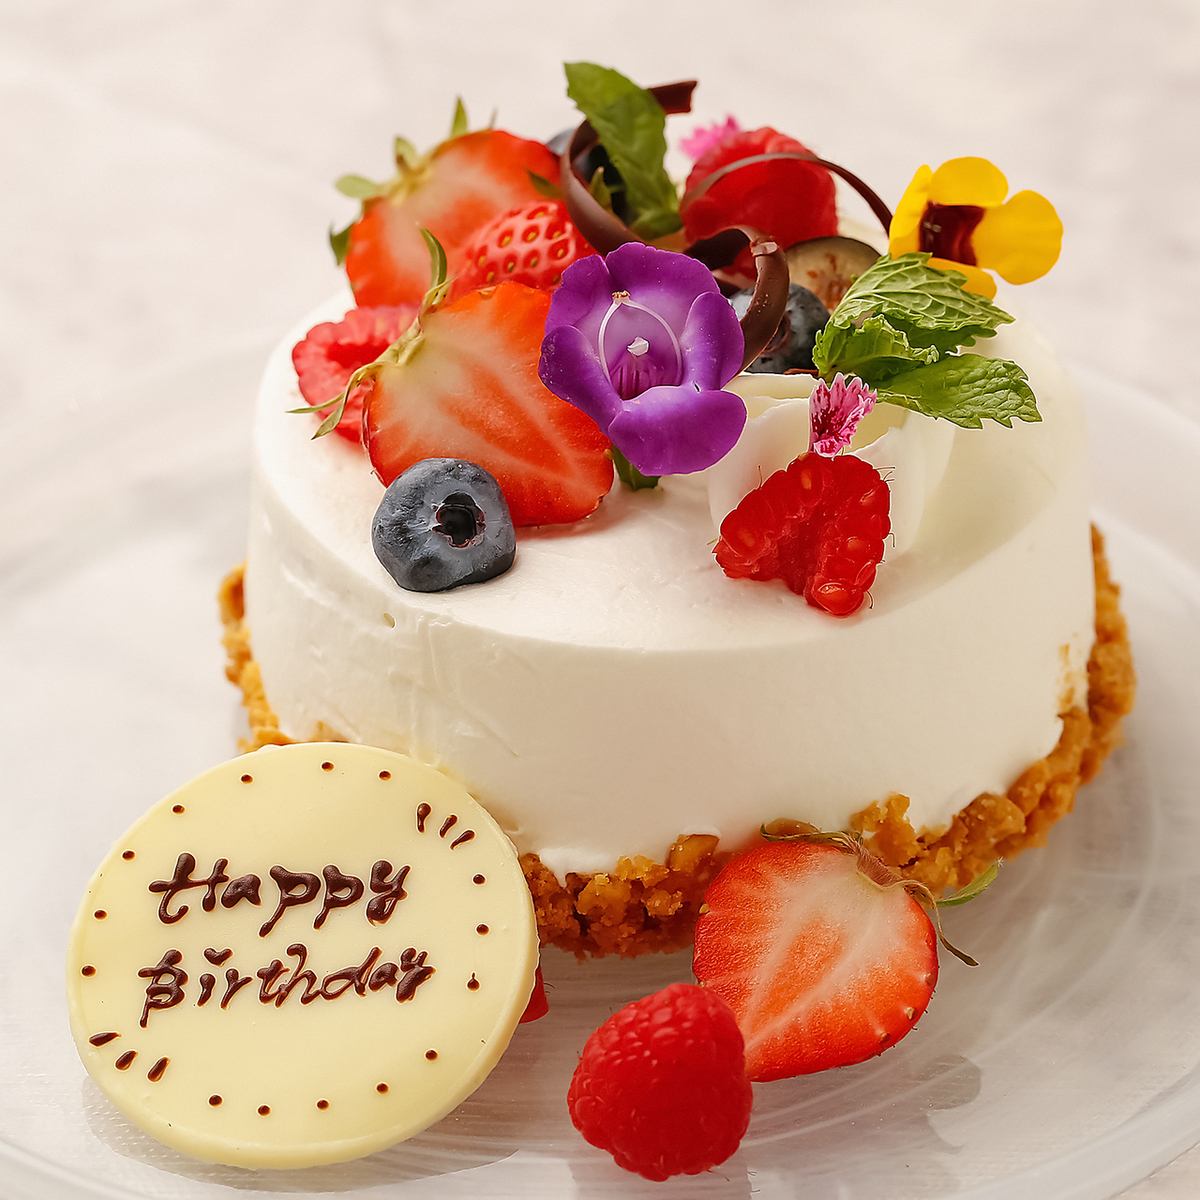 生日、周年纪念日♪整块蛋糕进货...★